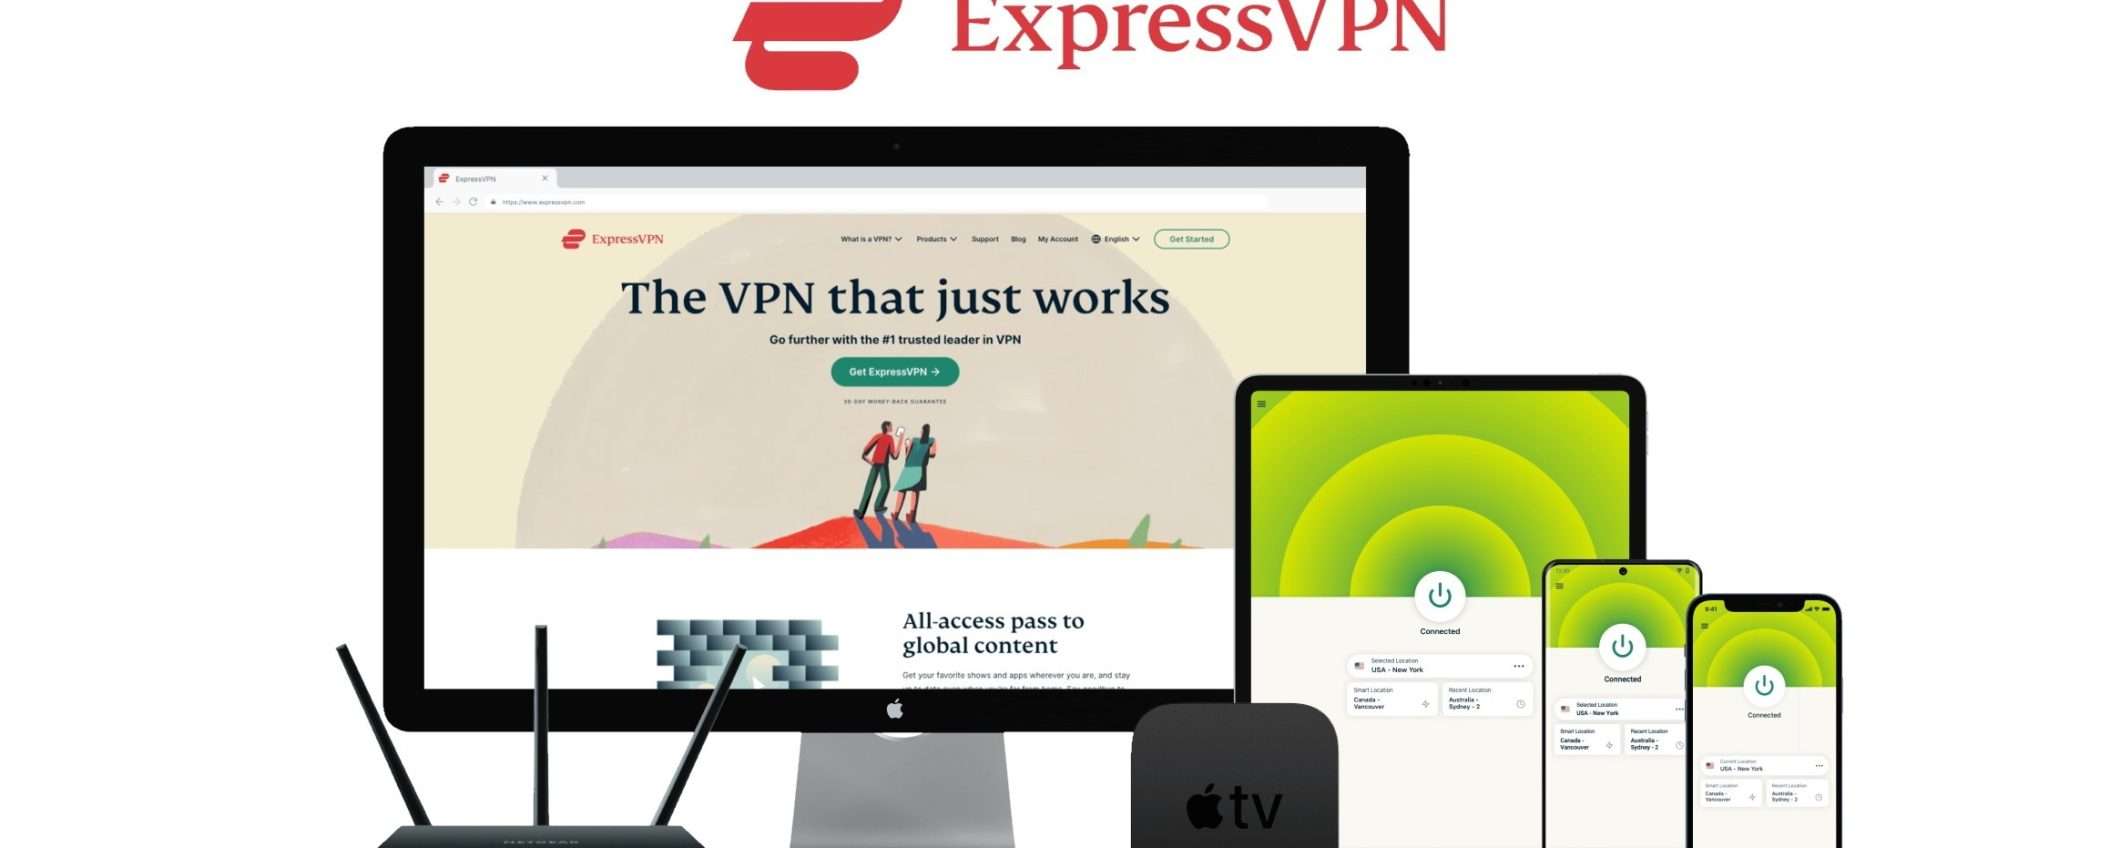 ExpressVPN è ancora più conveniente: 3 mesi GRATIS scegliendo questa VPN